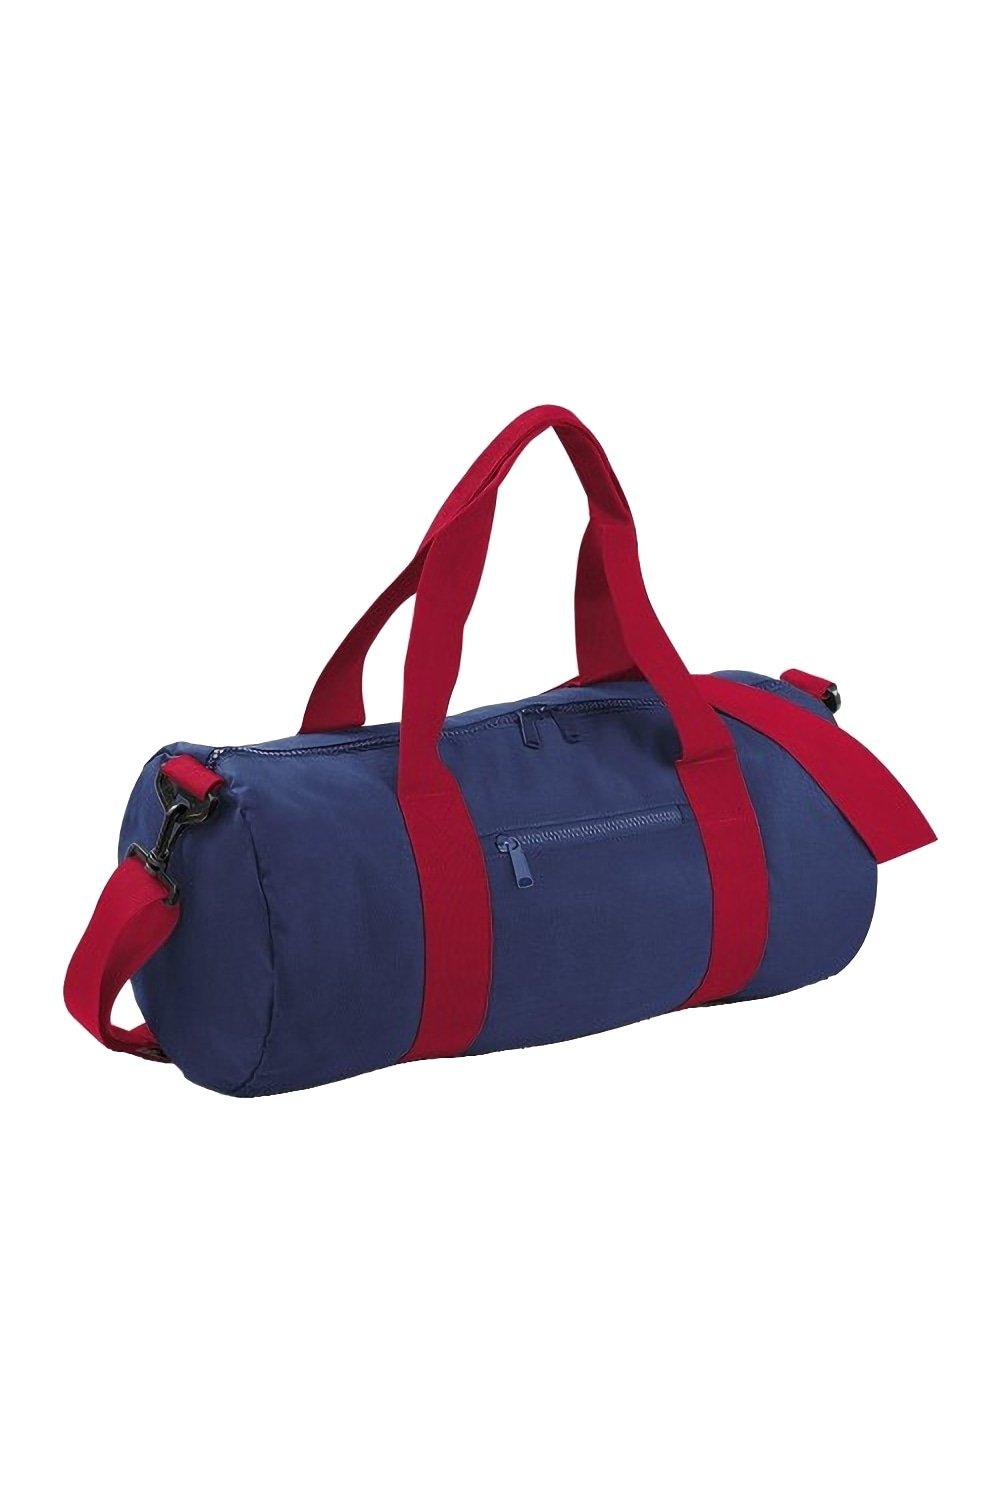 Обычная университетская бочка/спортивная сумка (20 литров) Bagbase, темно-синий cумка на пояс тачки 25 x 6 x 13 см отдел на молнии без подклада disney в наборе 1шт